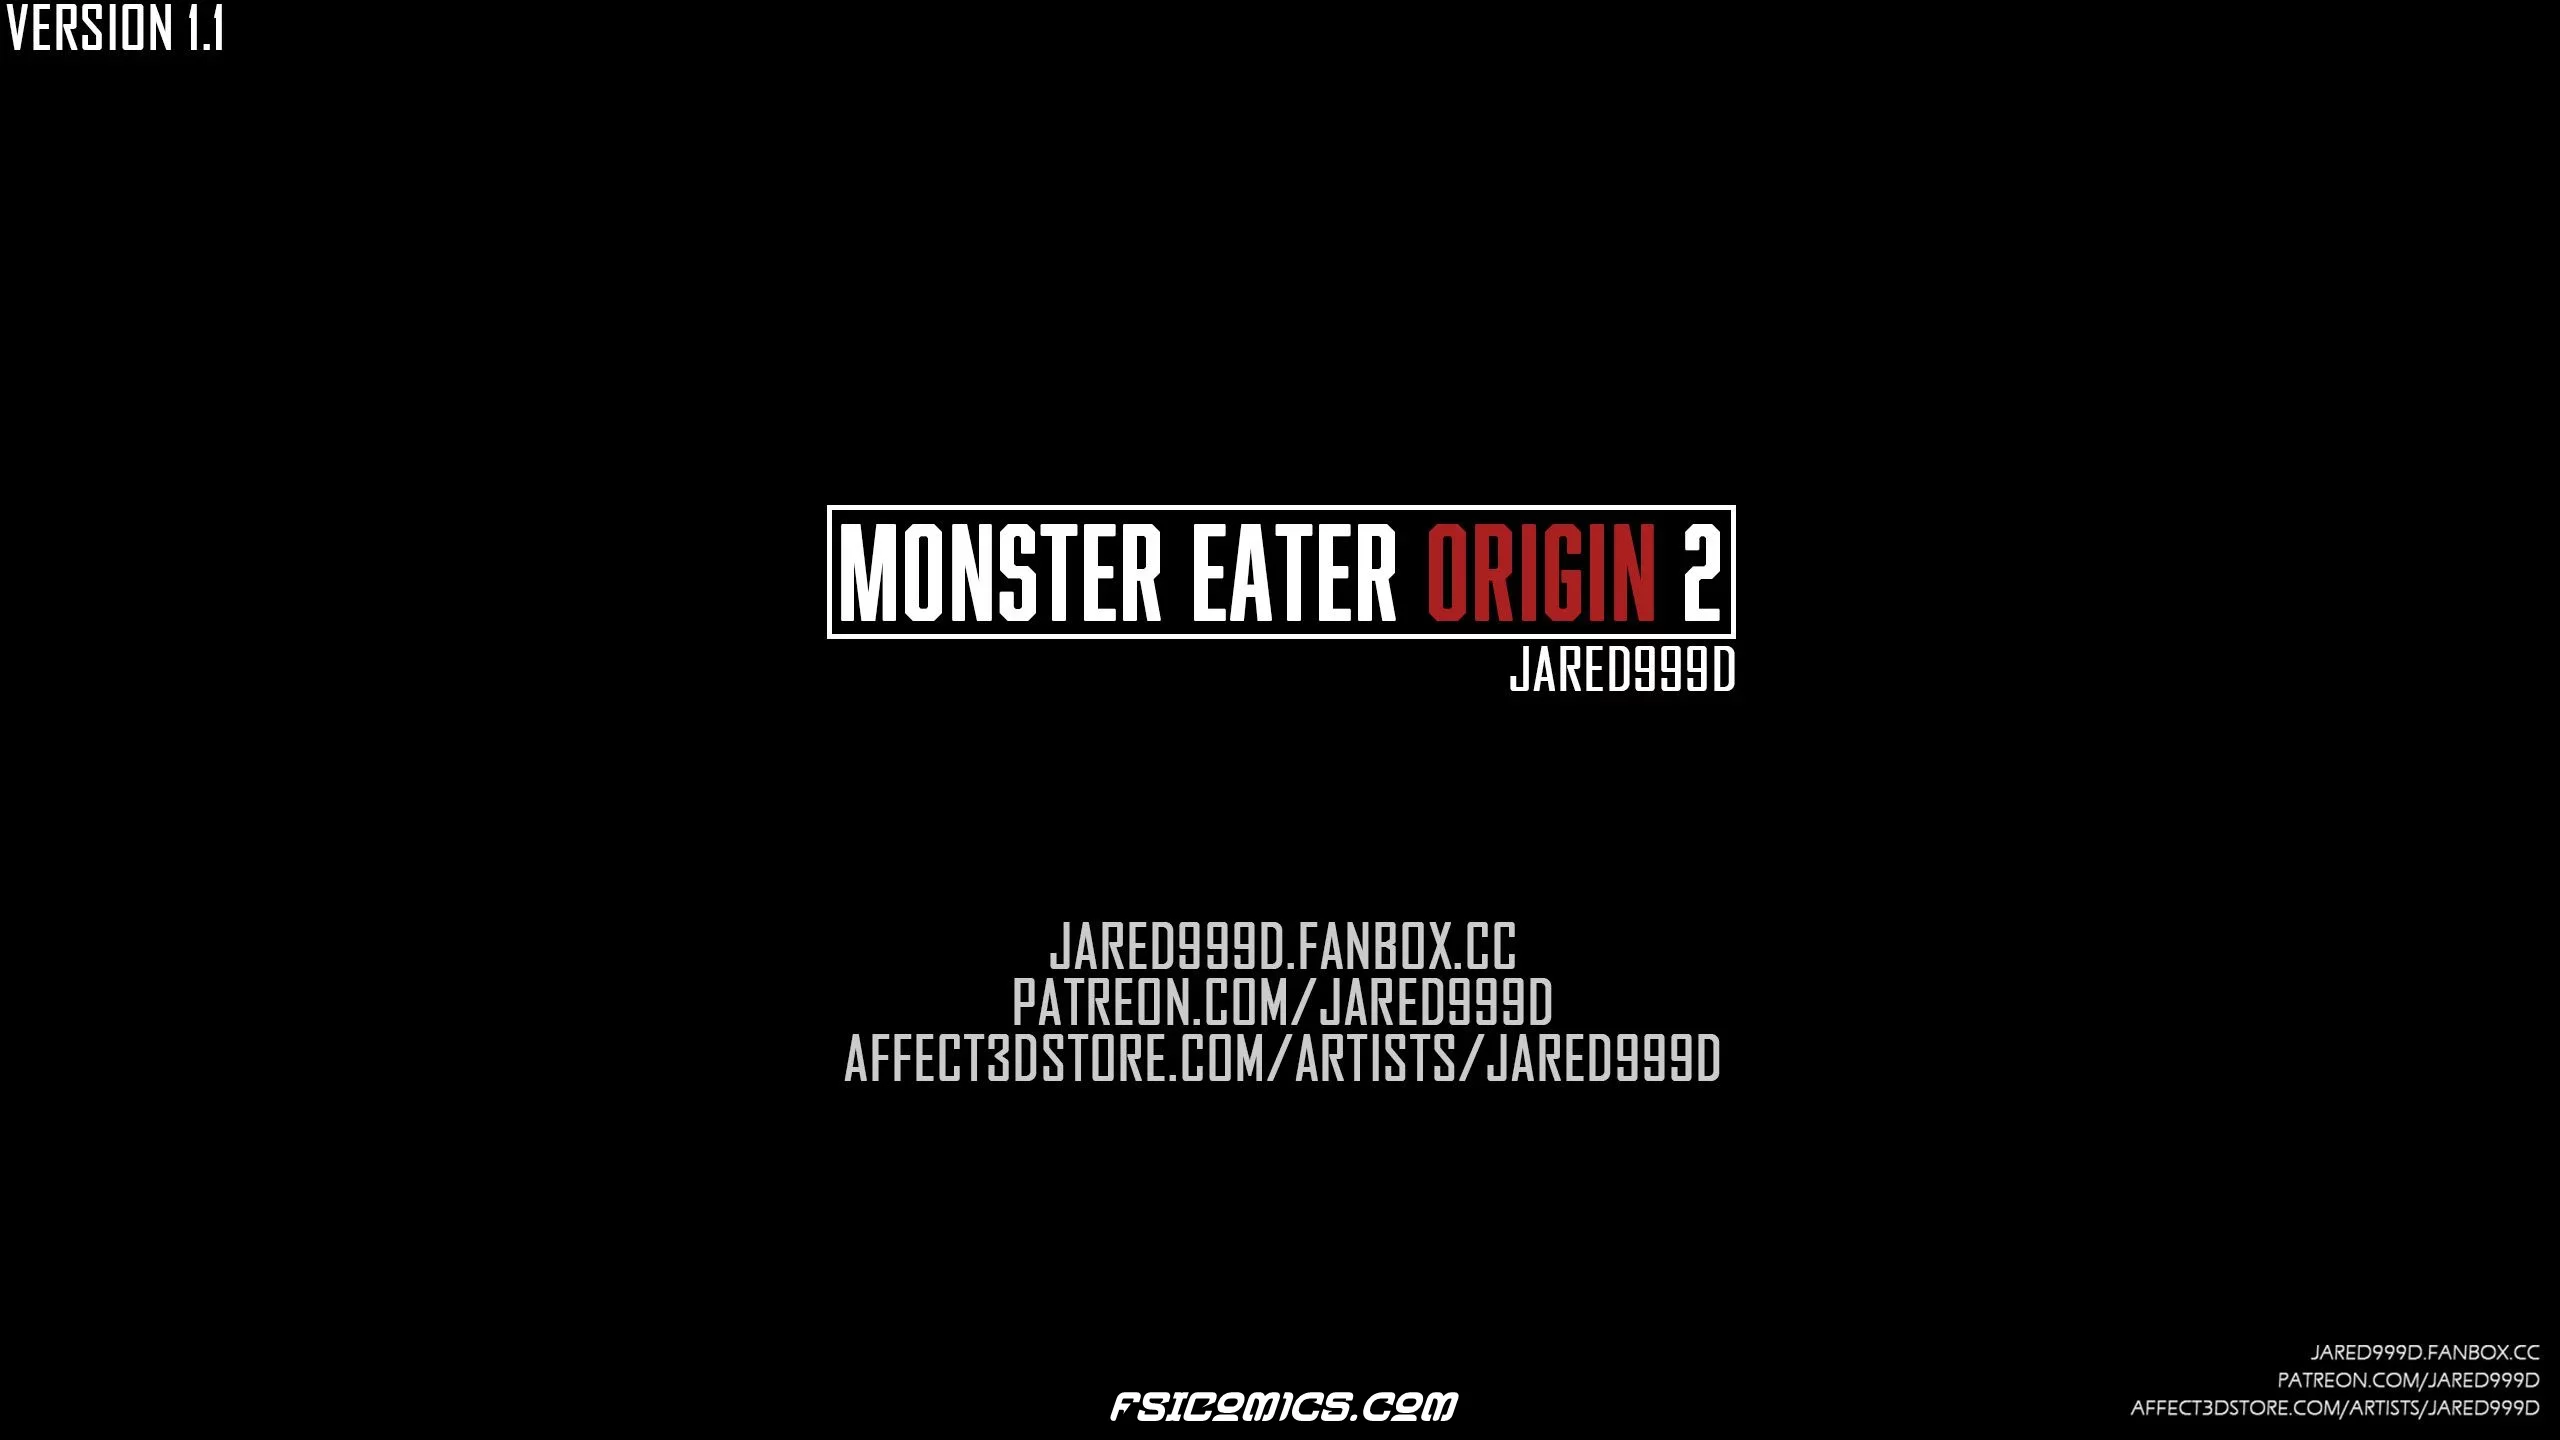 Monster Eater Origins Chapter 2 - Jared999D - 15 - FSIComics